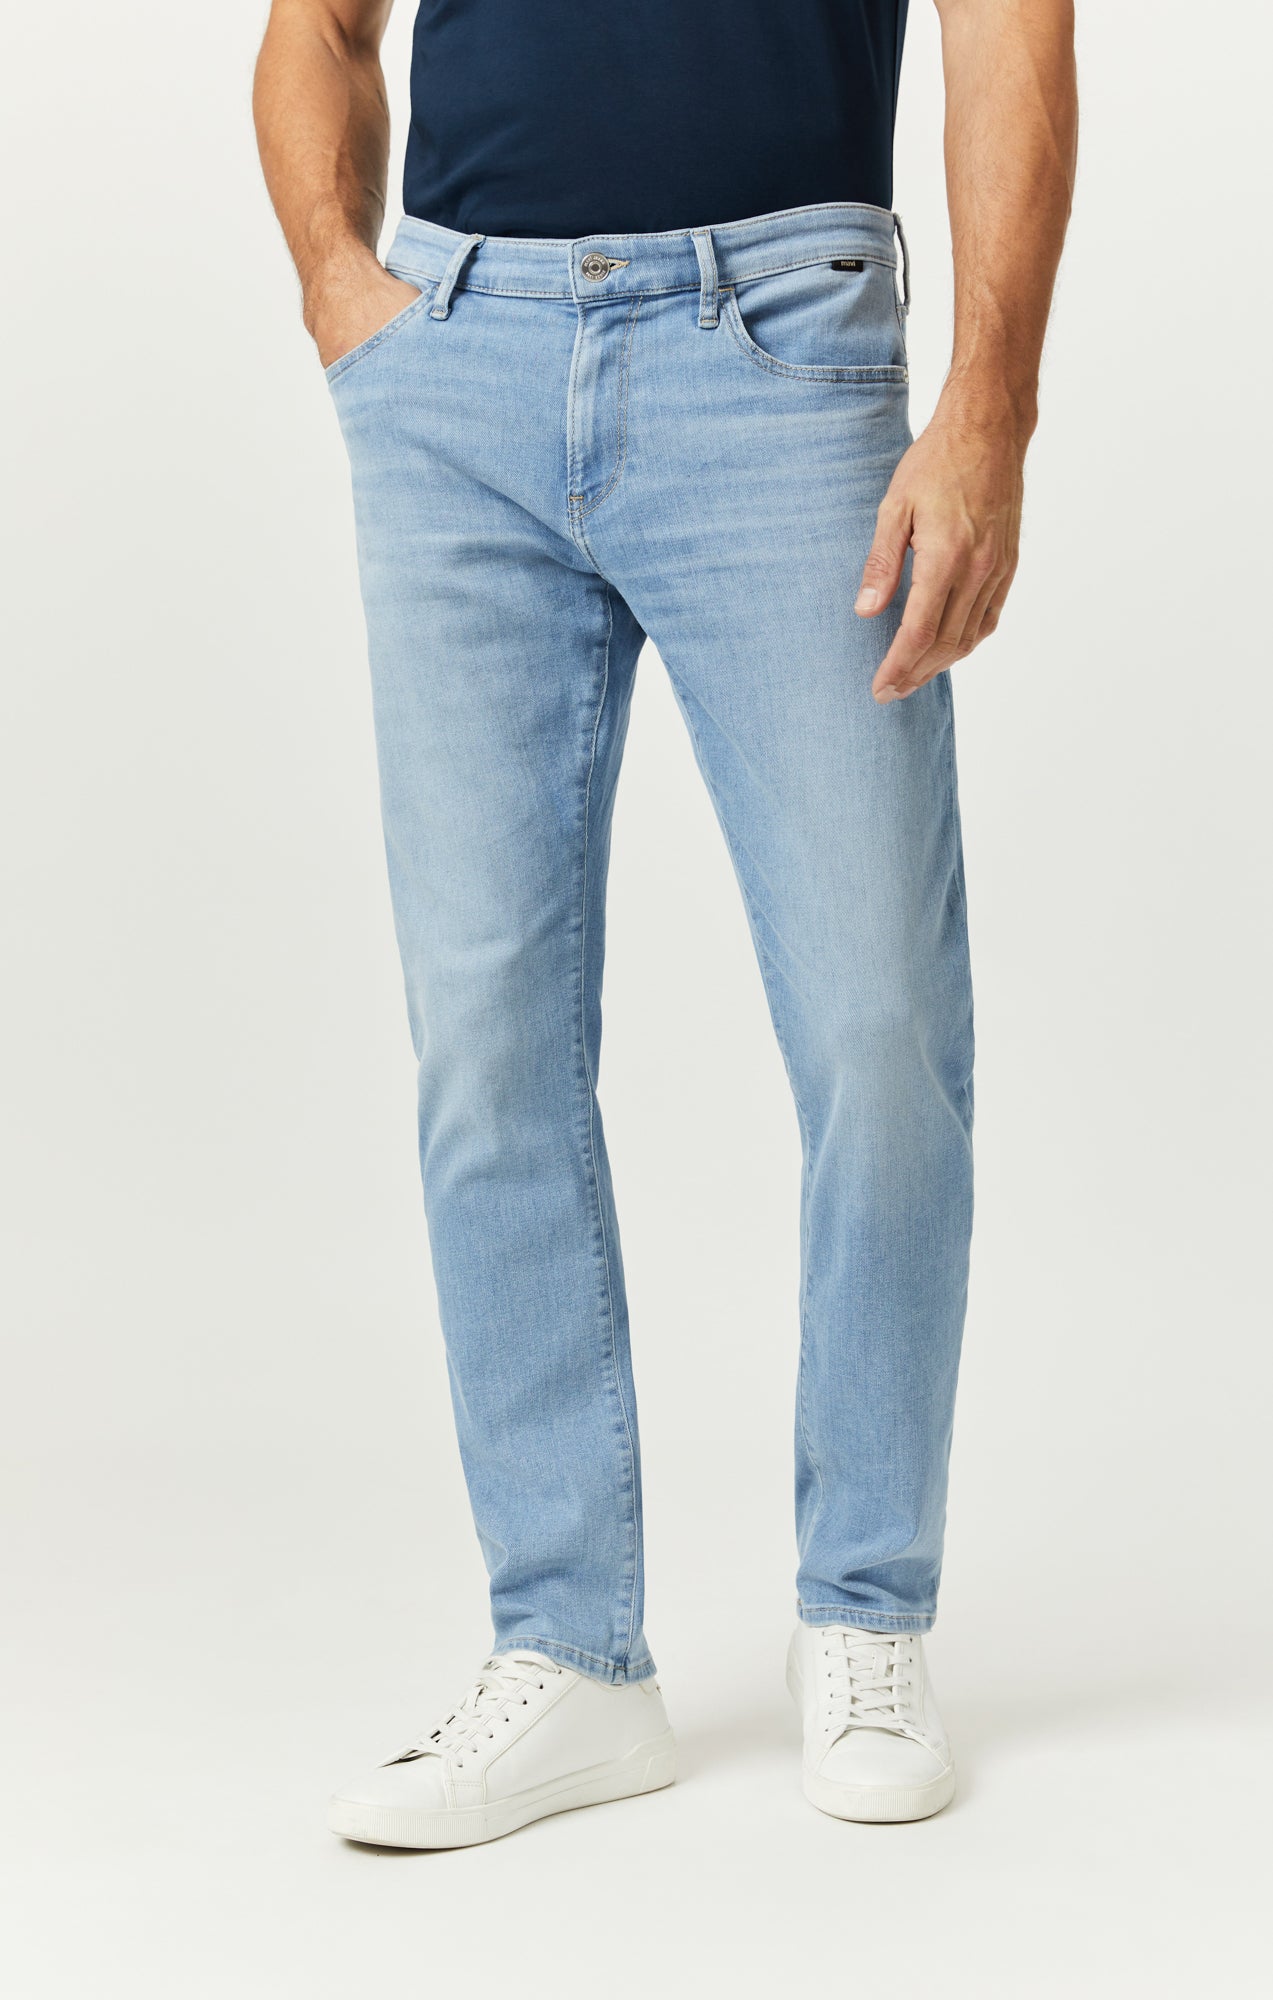 Slim Straight Leg Jeans for Men, Mens Jeans